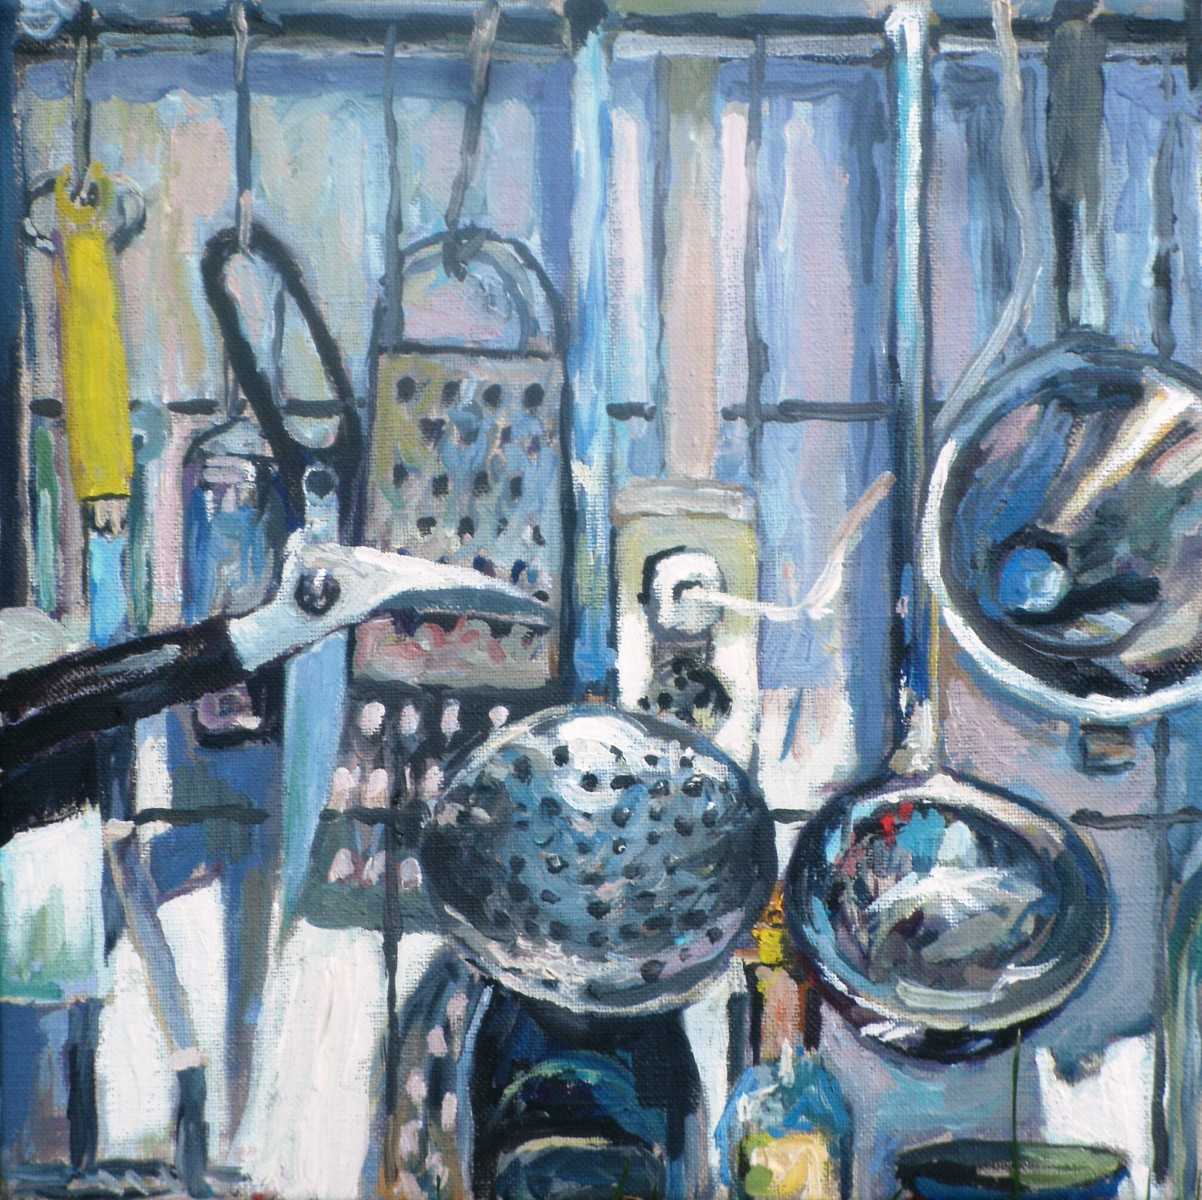 Rob Jacobs schildert doek van 30x30cm, tijdens stilleven van keukengerei.